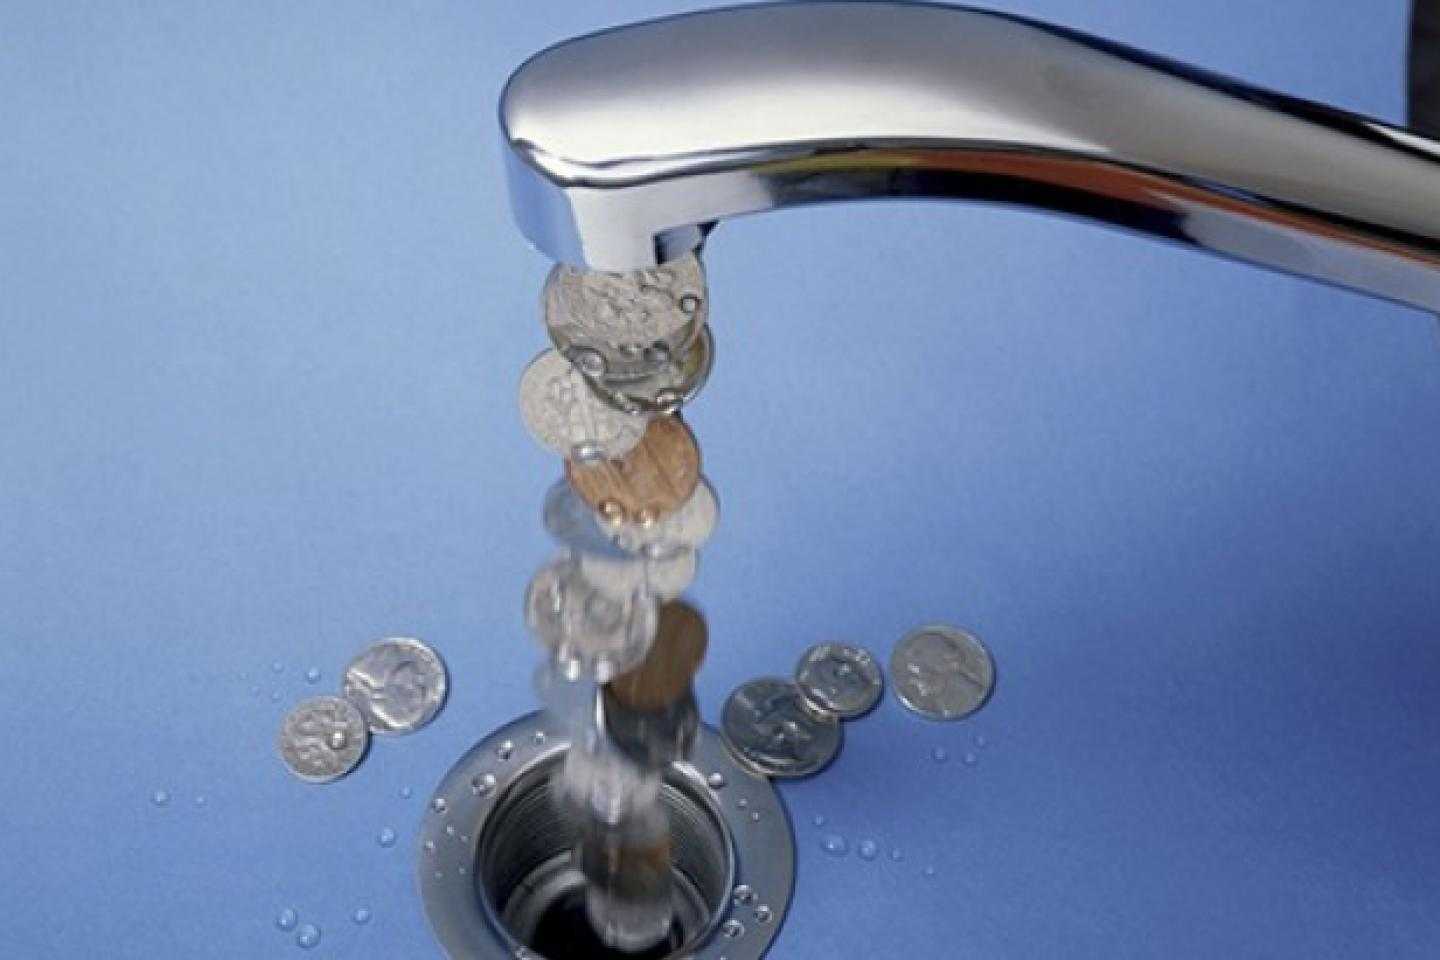 Оплата потребления воды. Вода из крана. Экономия воды. Кран с водой. Кран с деньгами.